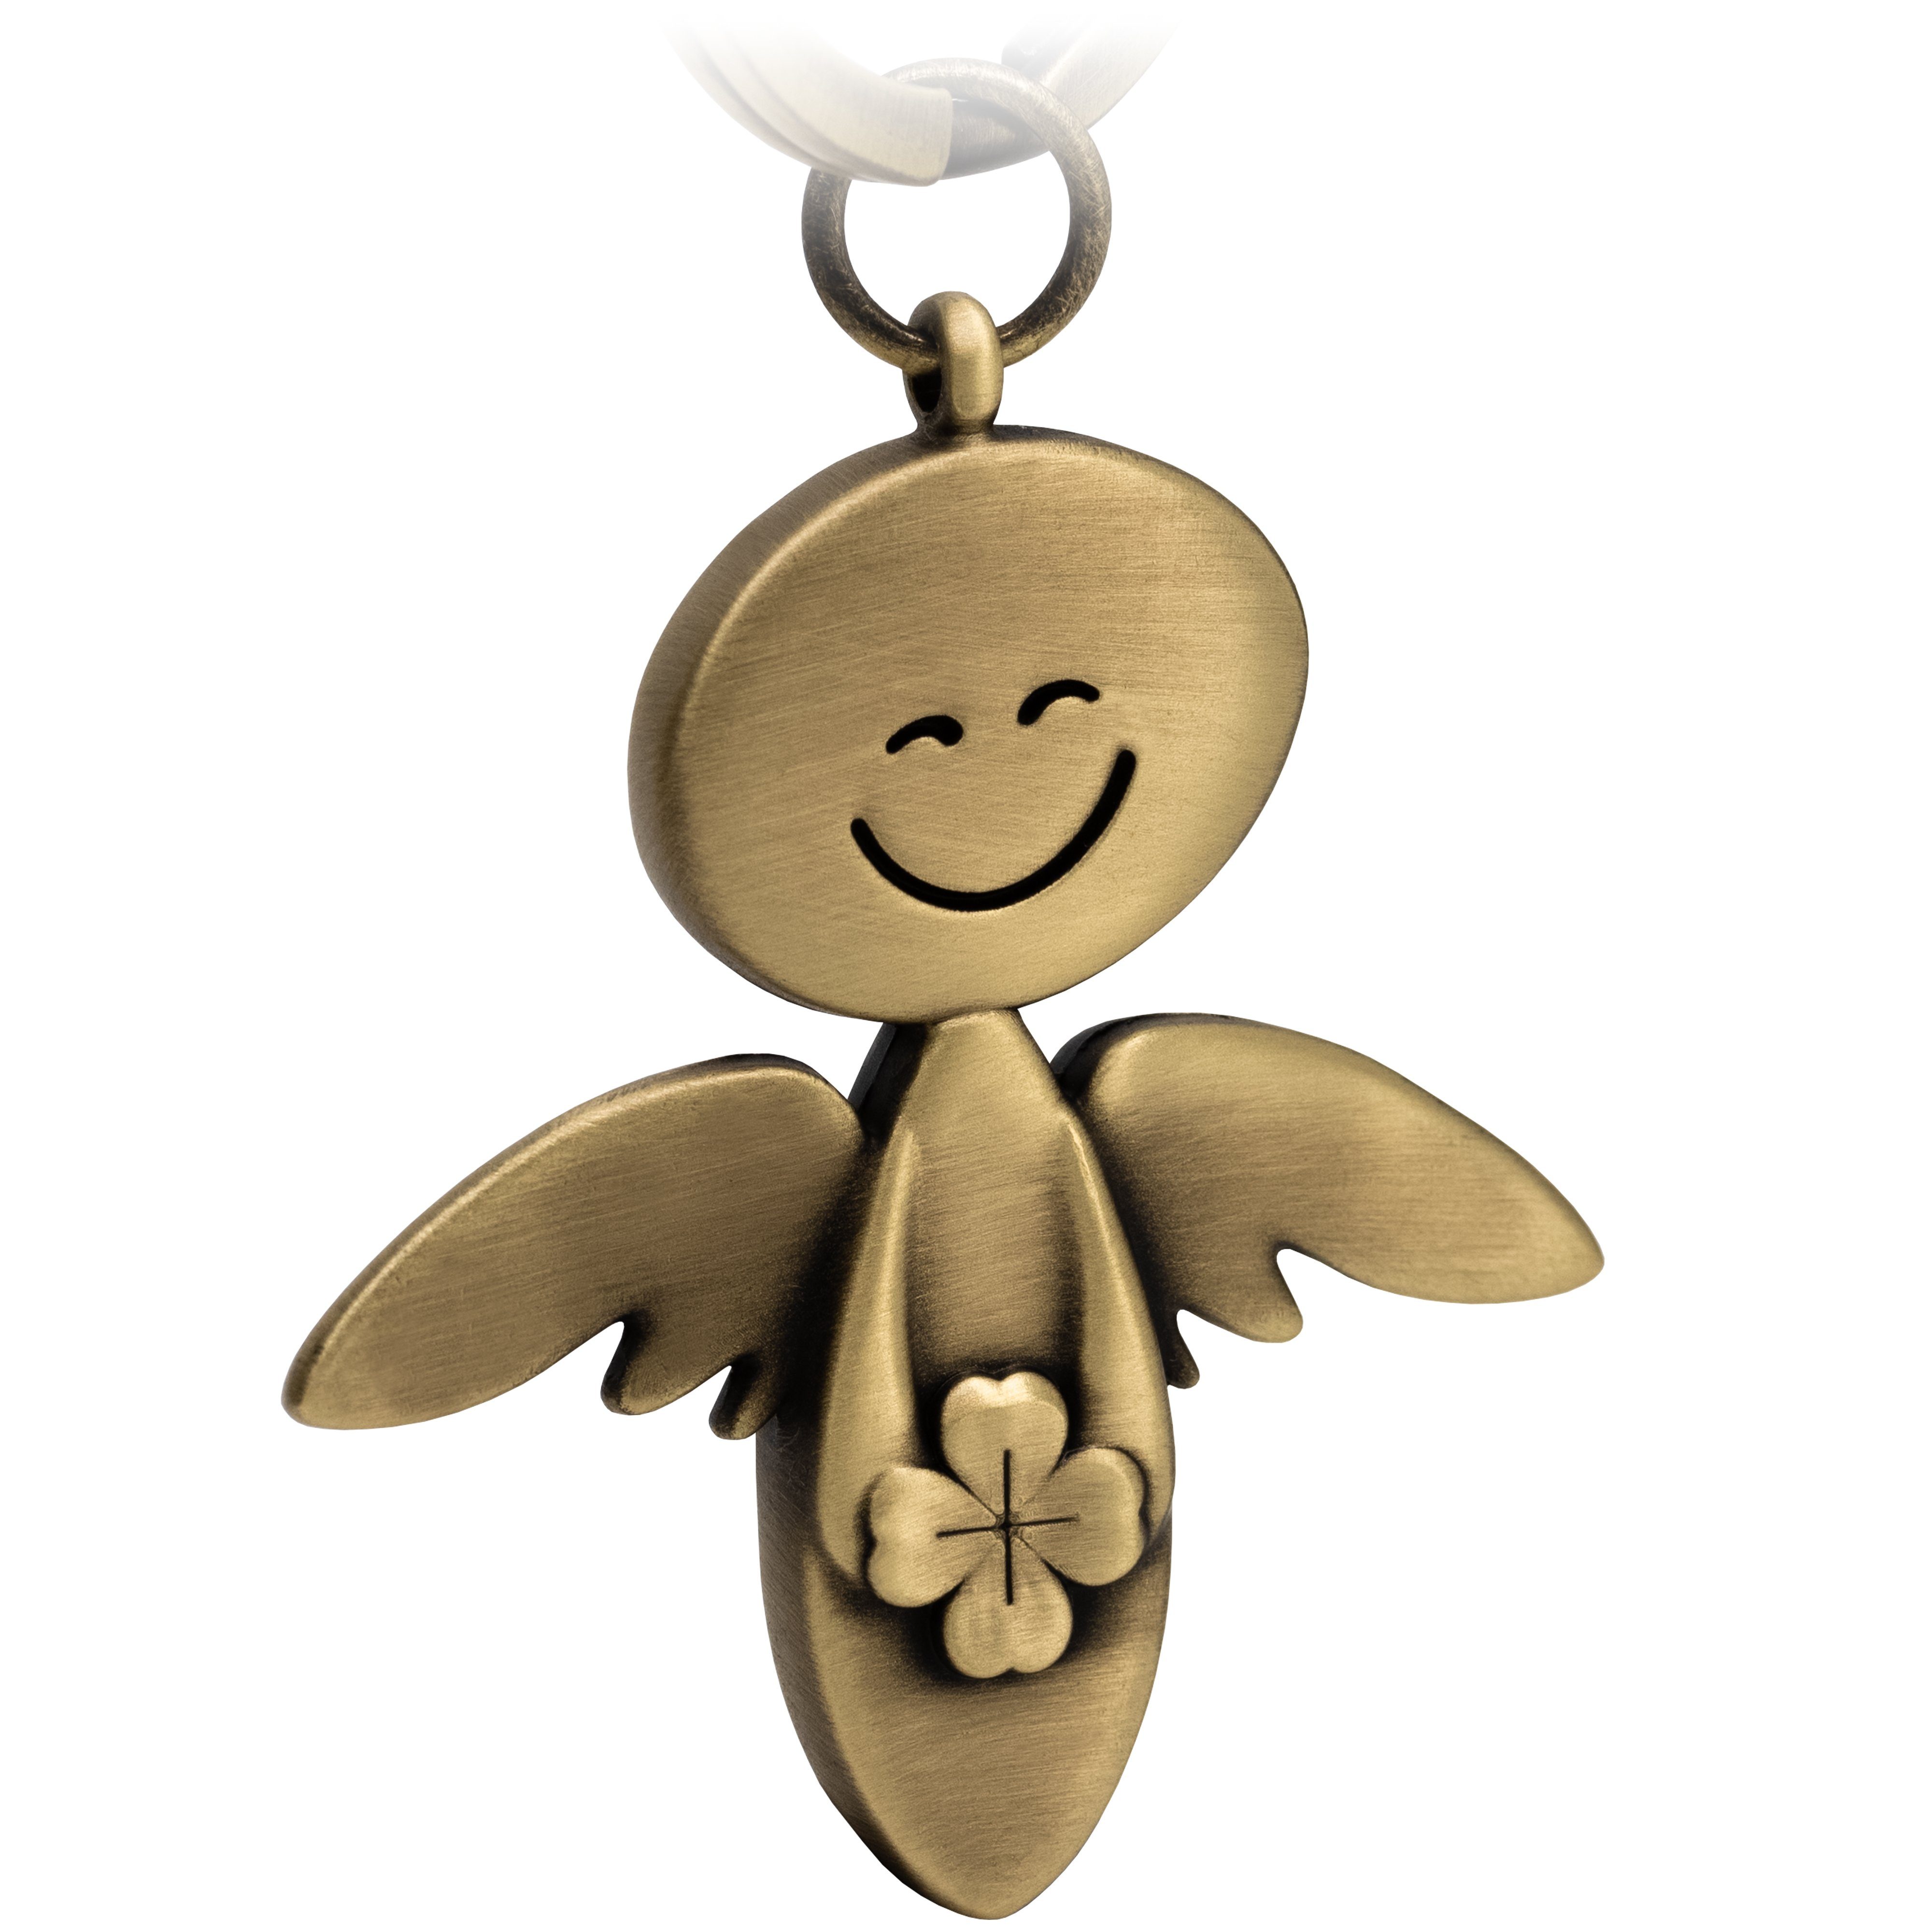 FABACH Schlüsselanhänger Schutzengel Smile mit Kleeblatt